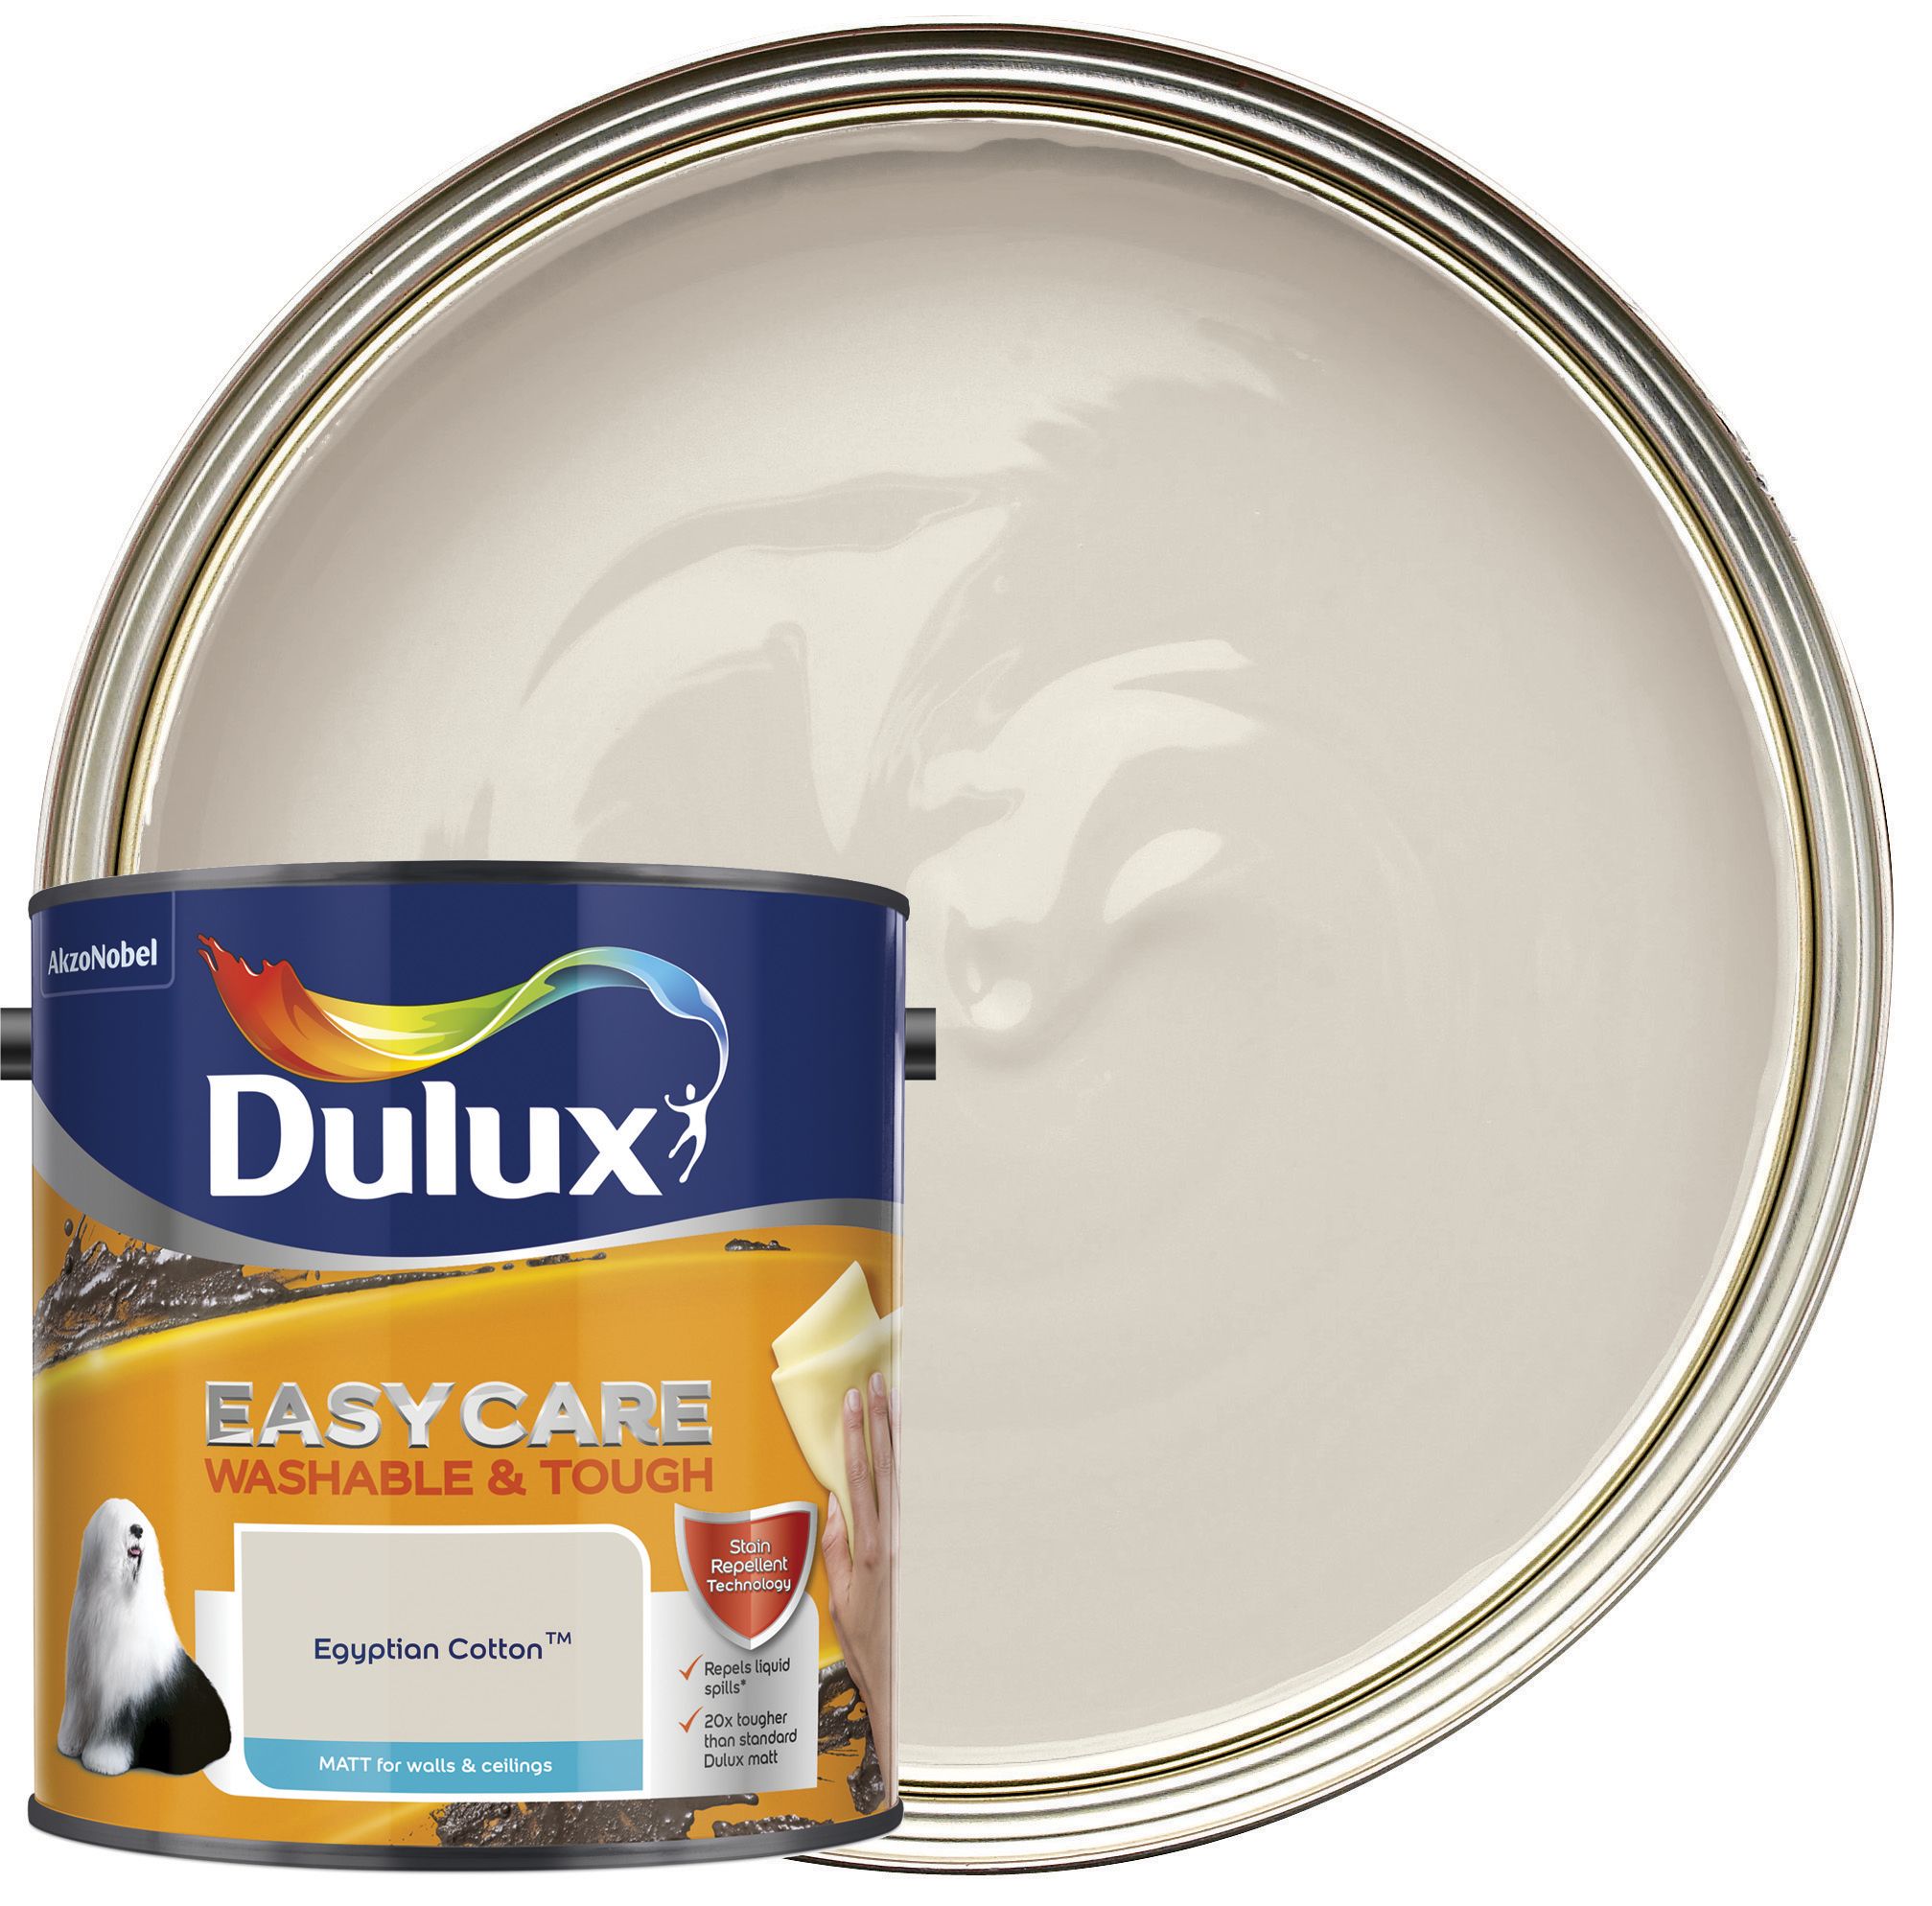 Dulux Easycare Washable & Tough Matt Emulsion Paint - Egyptian Cotton - 2.5L